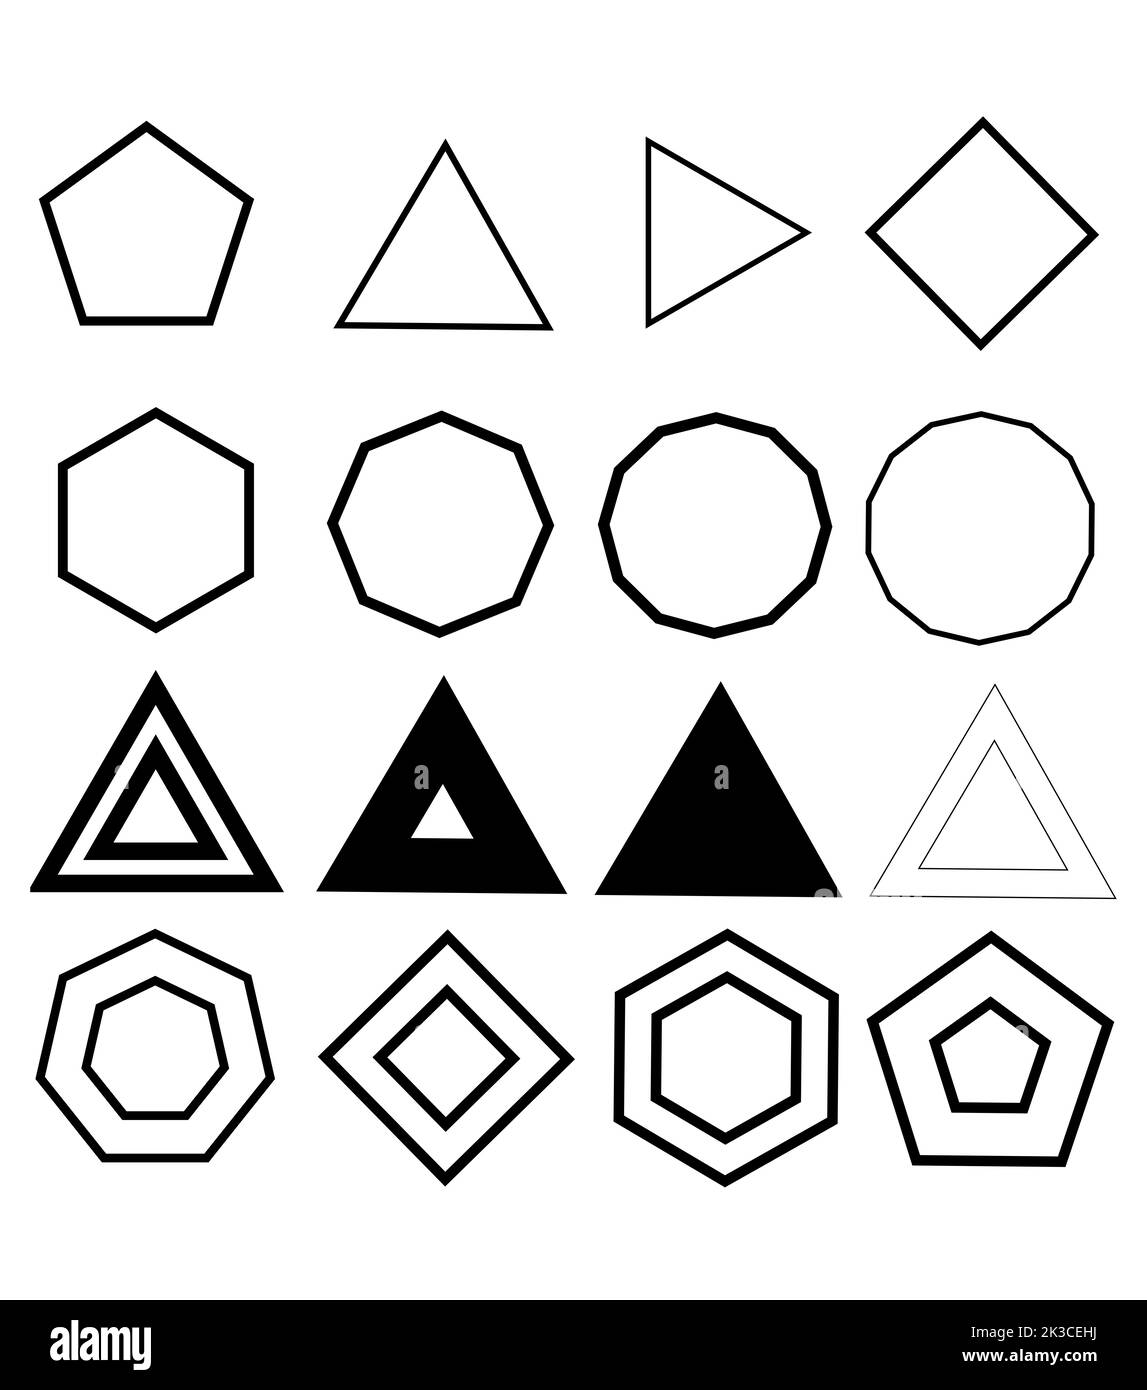 Polygonformen in Schwarz und Weiß, isoliert auf weißem Hintergrund. Abbildung der Polygonsymbole Stockfoto